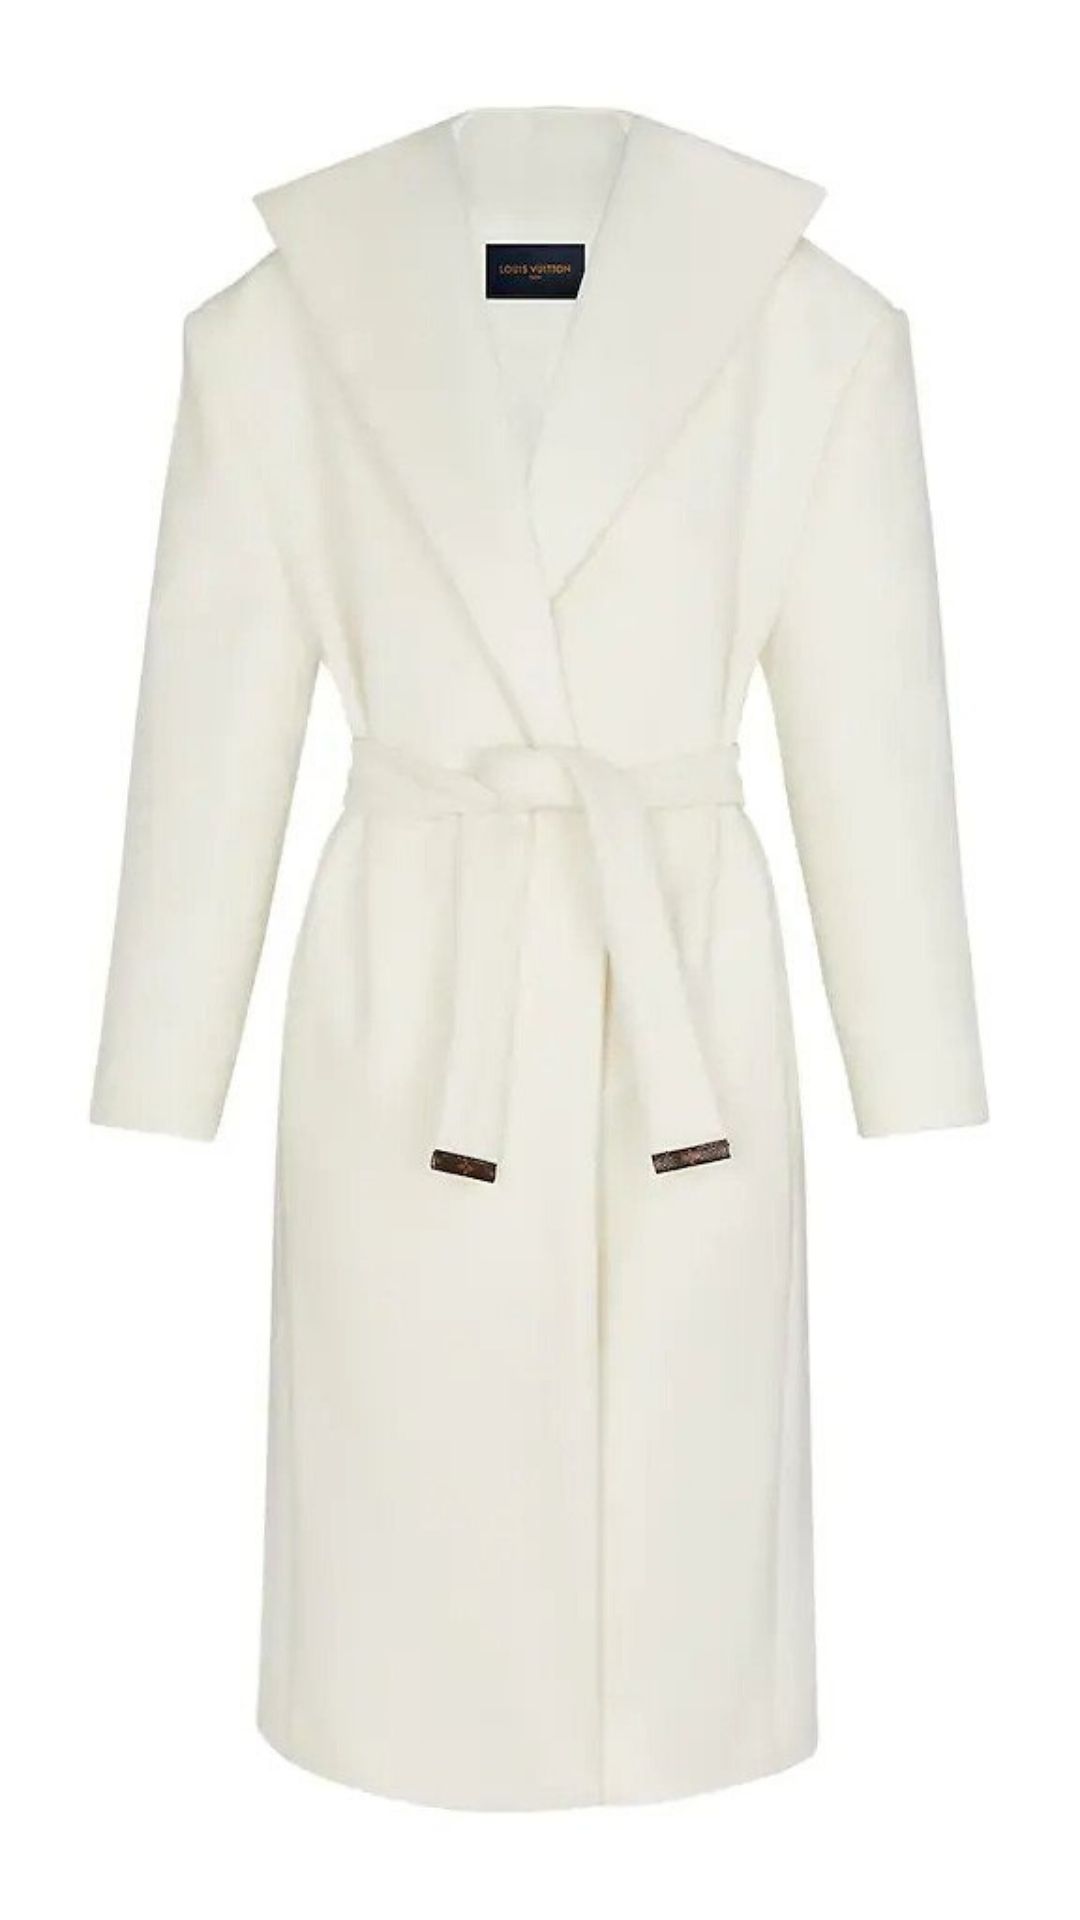 Louis Vuitton Leather Strip White Mink Coat Milk White. Size 36